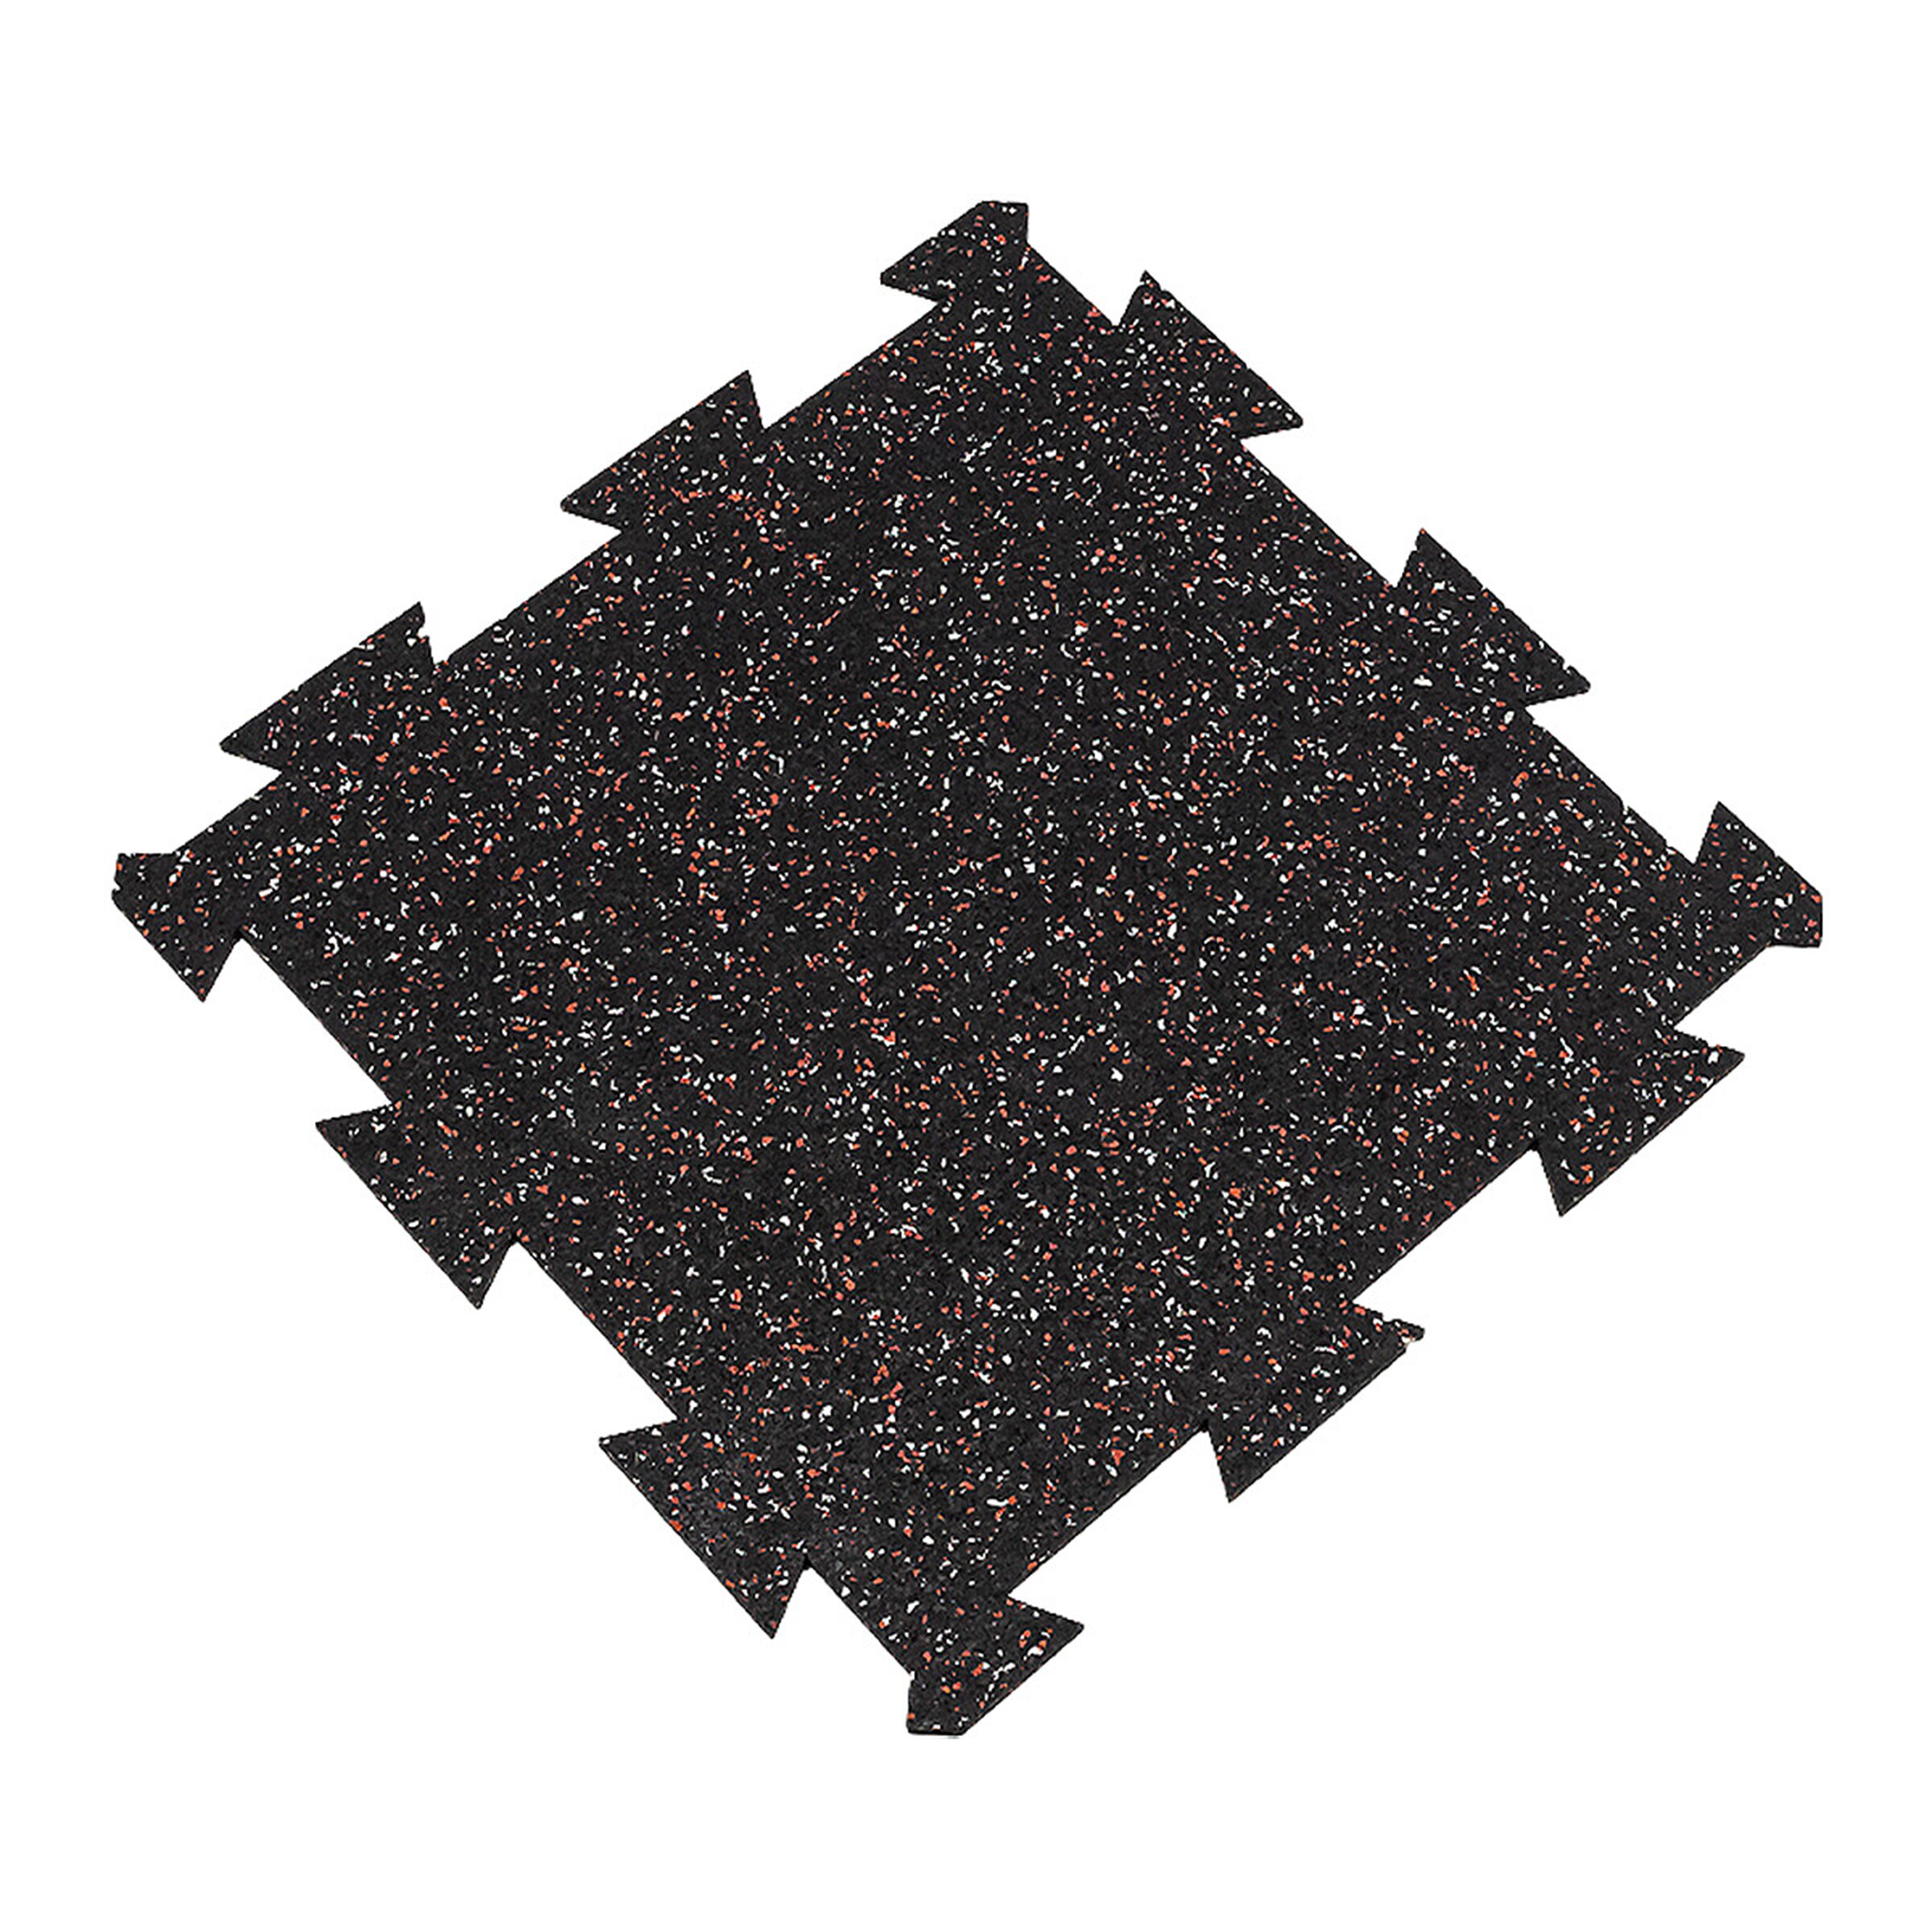 Čierno-bielo-červená gumová modulová puzzle dlažba (stred) FLOMA FitFlo SF1050 - dĺžka 50 cm, šírka 50 cm, výška 0,8 cm